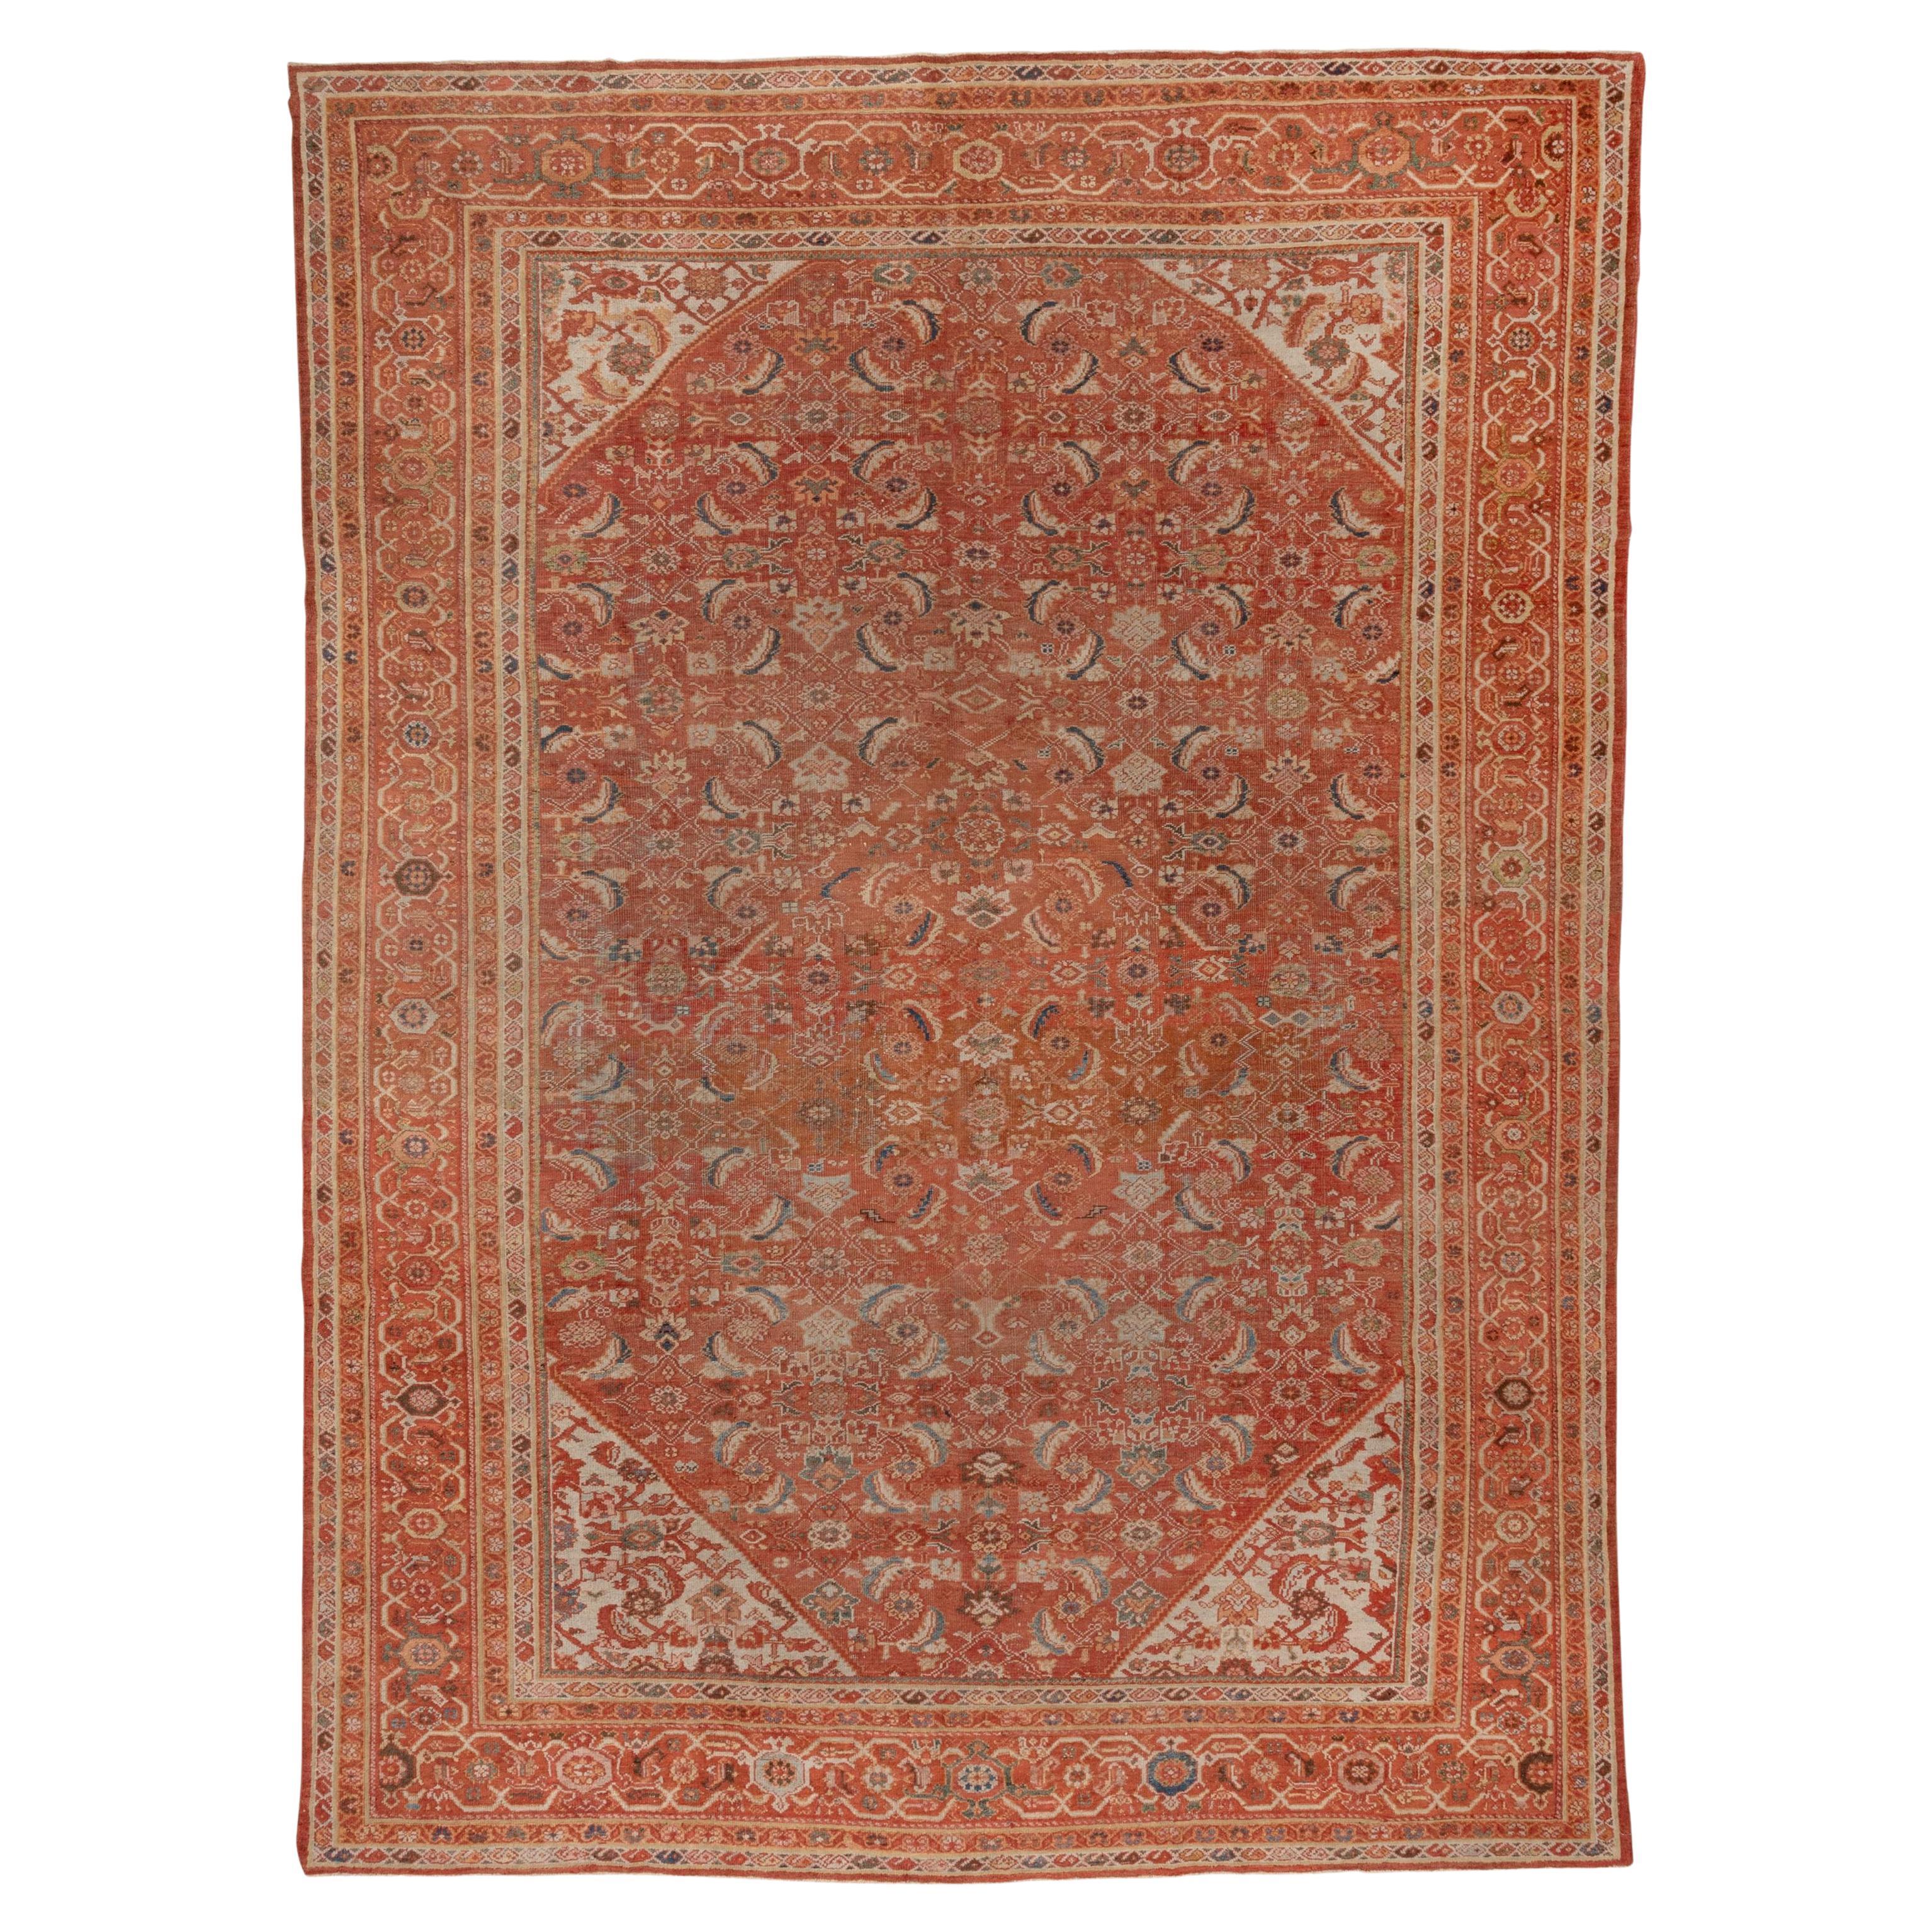 Orange Antique Persian Mahal Carpet, circa 1930s